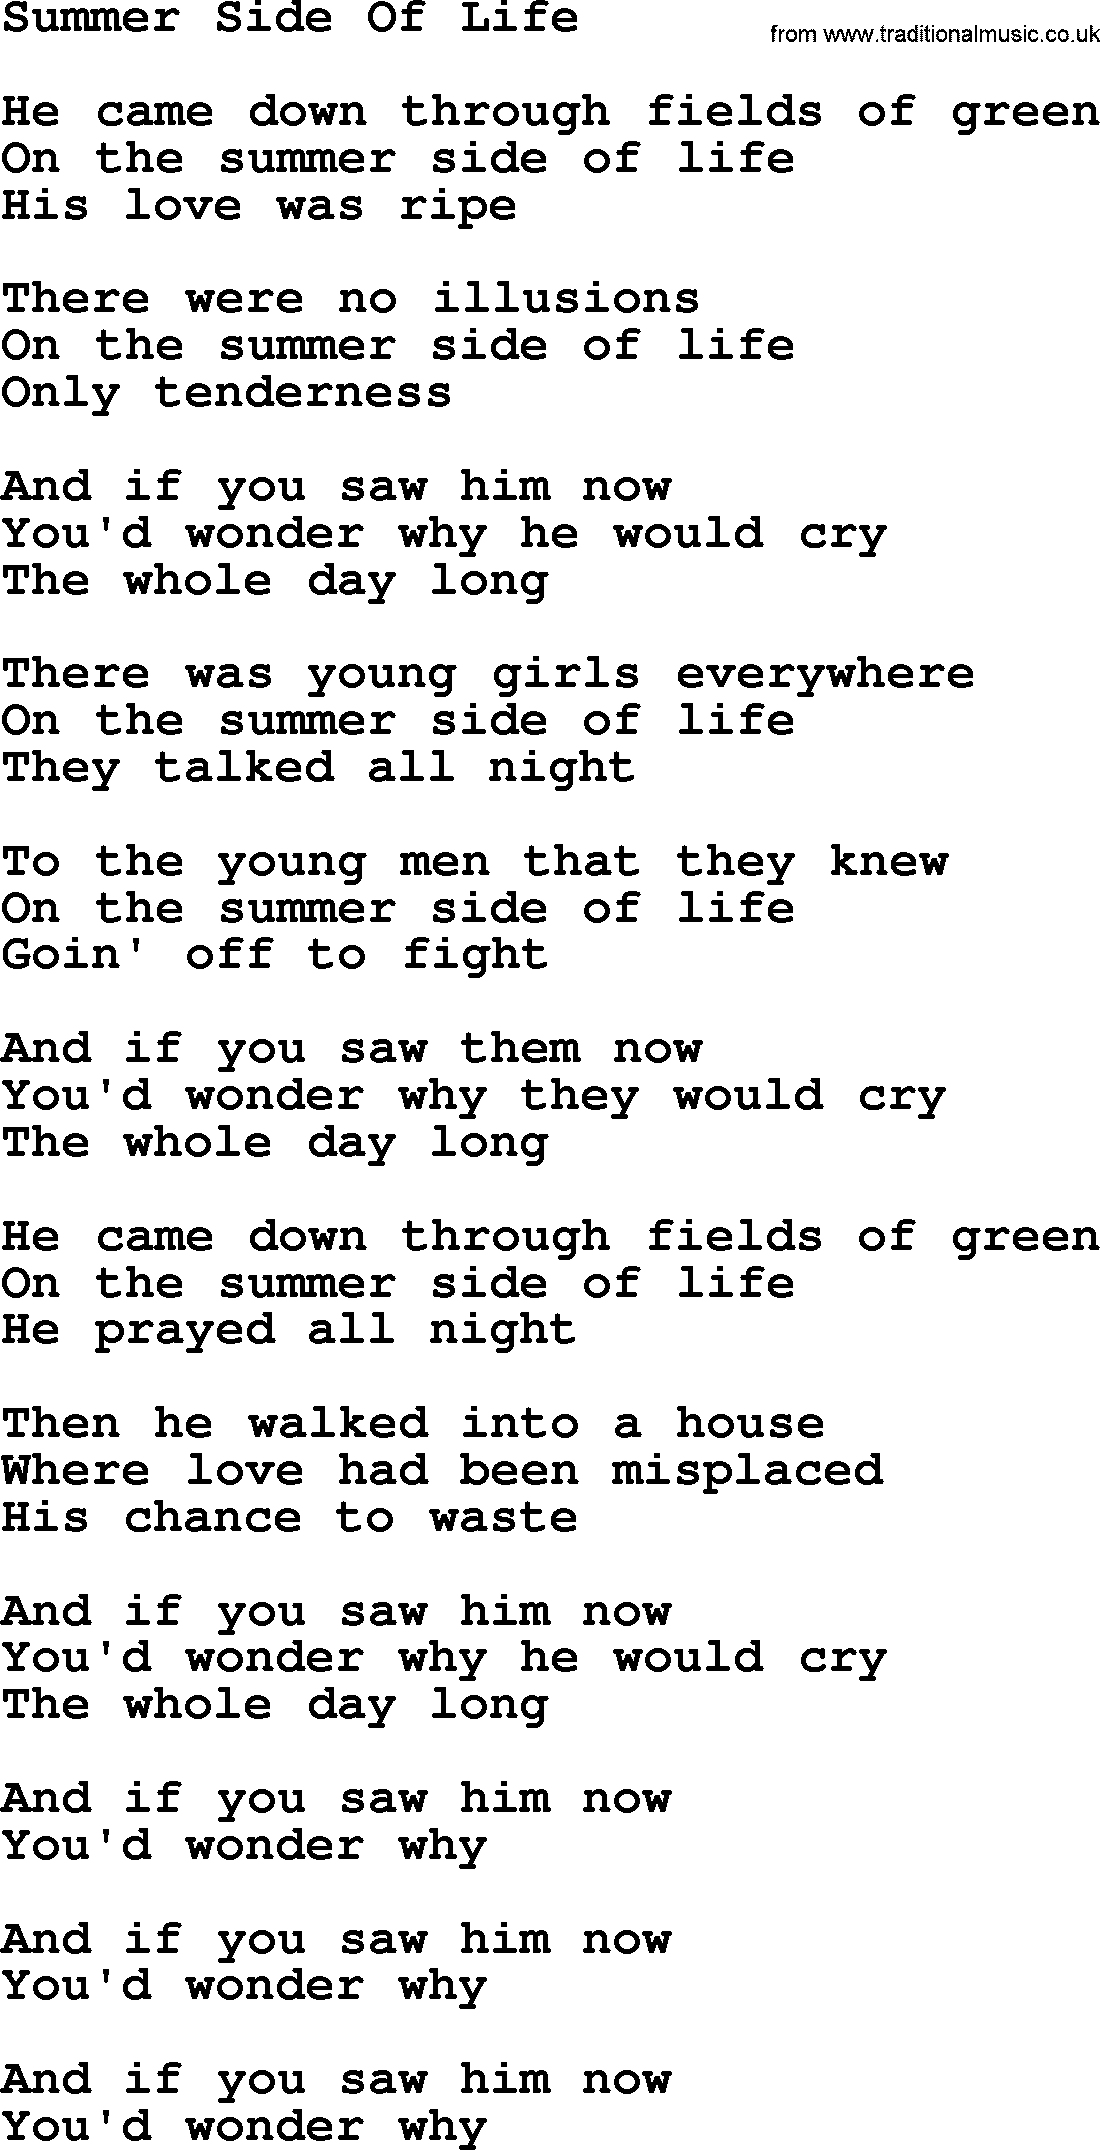 Gordon Lightfoot song Summer Side Of Life, lyrics